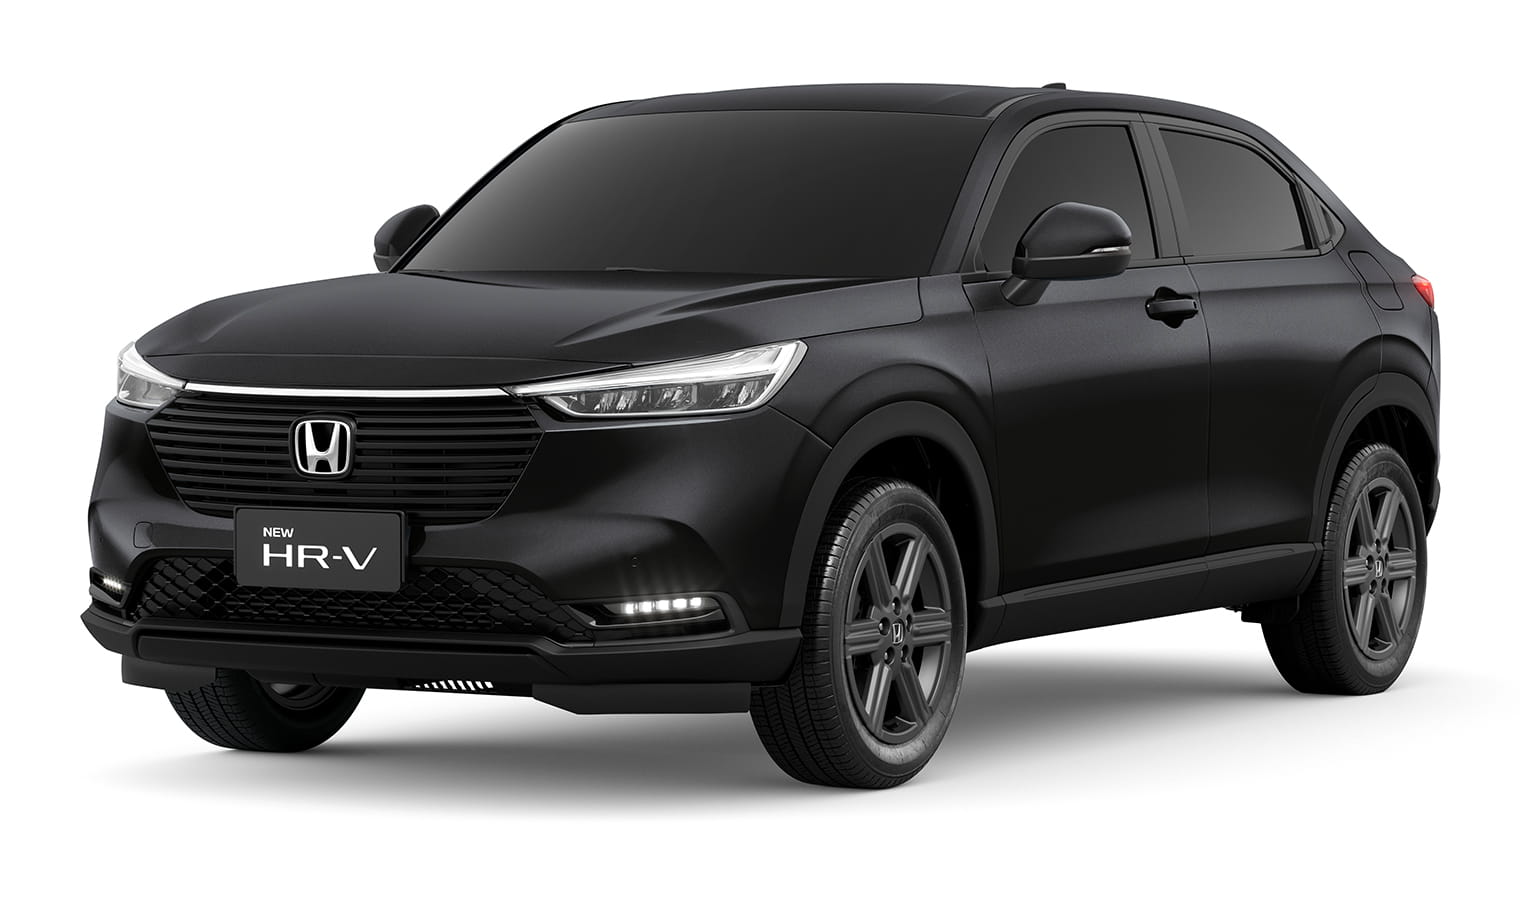   New HR-V EXL Honda Sensing - Honda Gendai - Você na direção certa - Criciúma, Tubarão e Araranguá